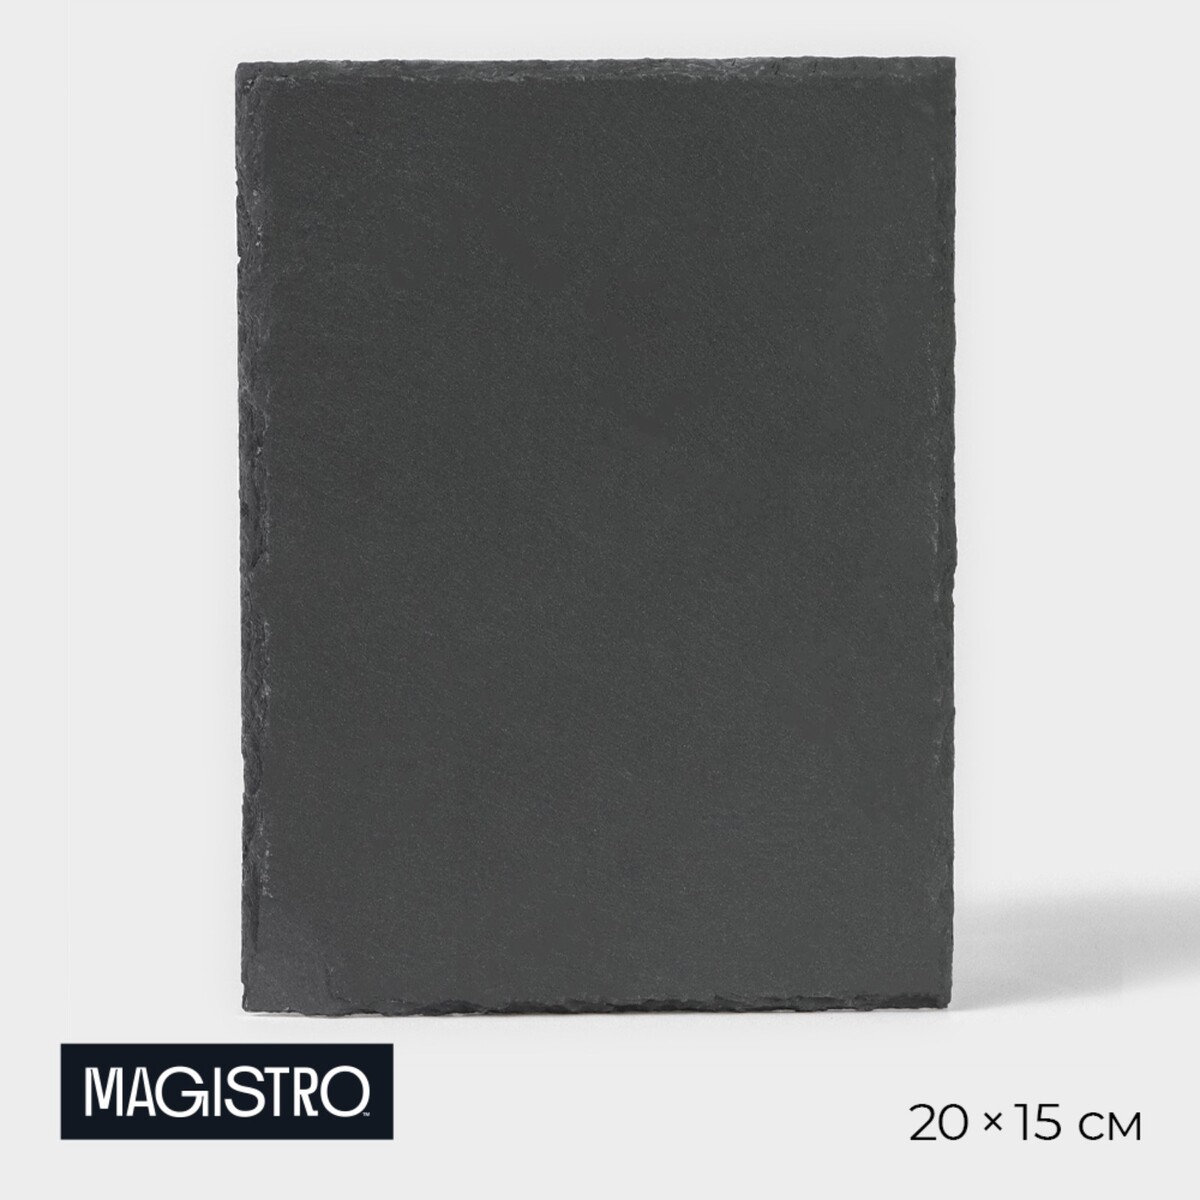 Доска для подачи из сланца magistro valley, 20×15 см поднос для подачи magistro